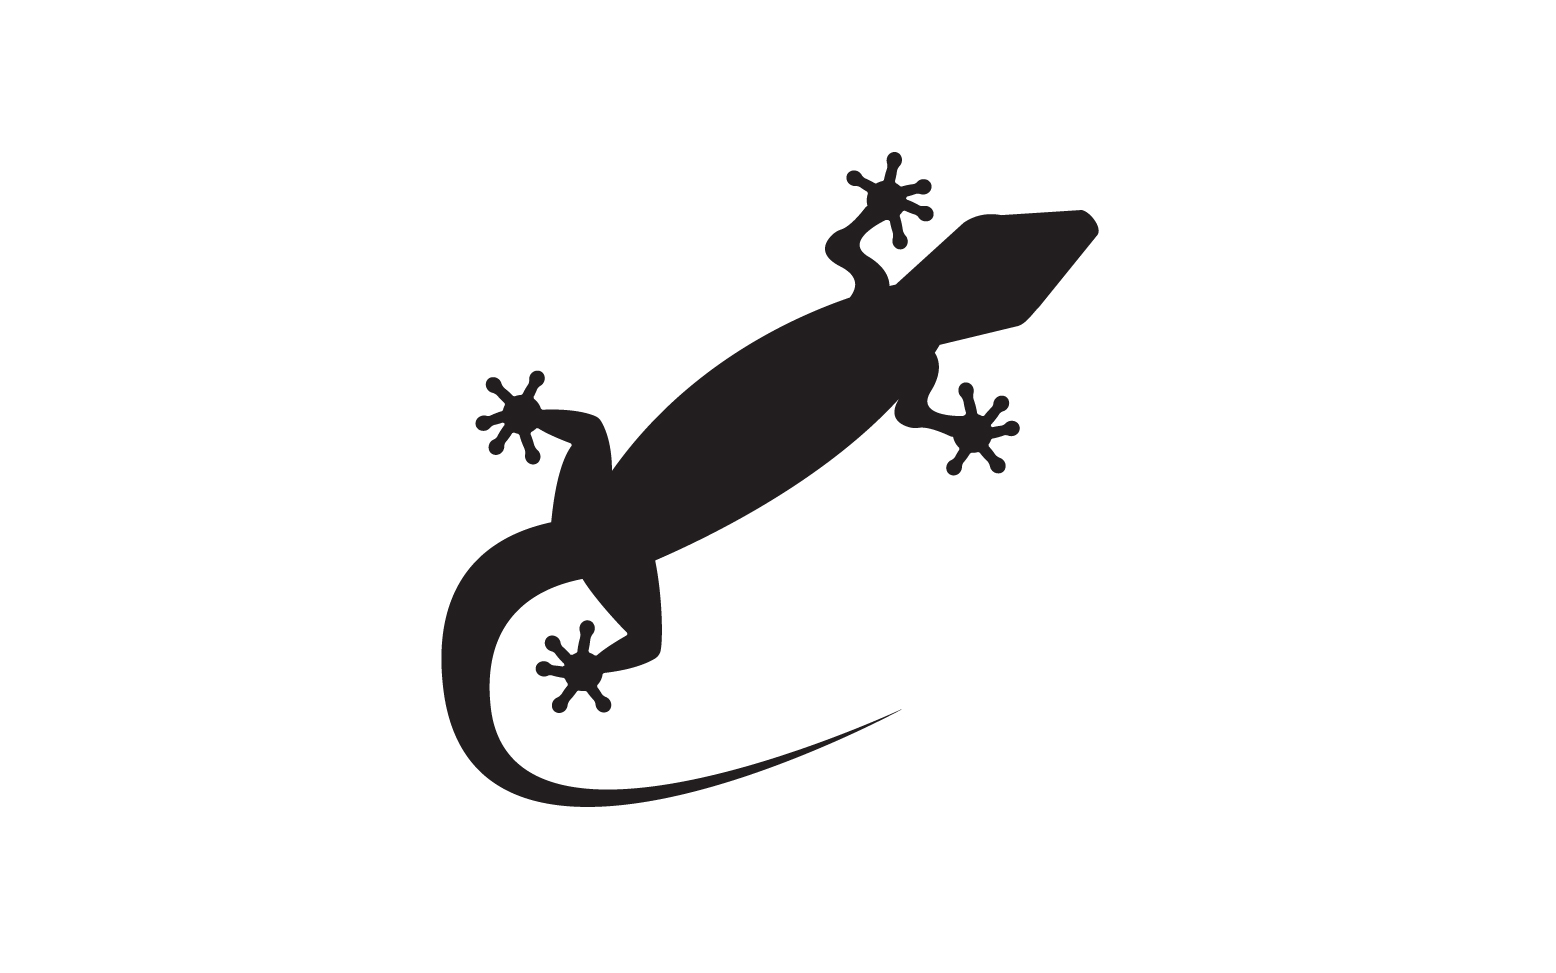 Lizard chameleon home lizard logo v23